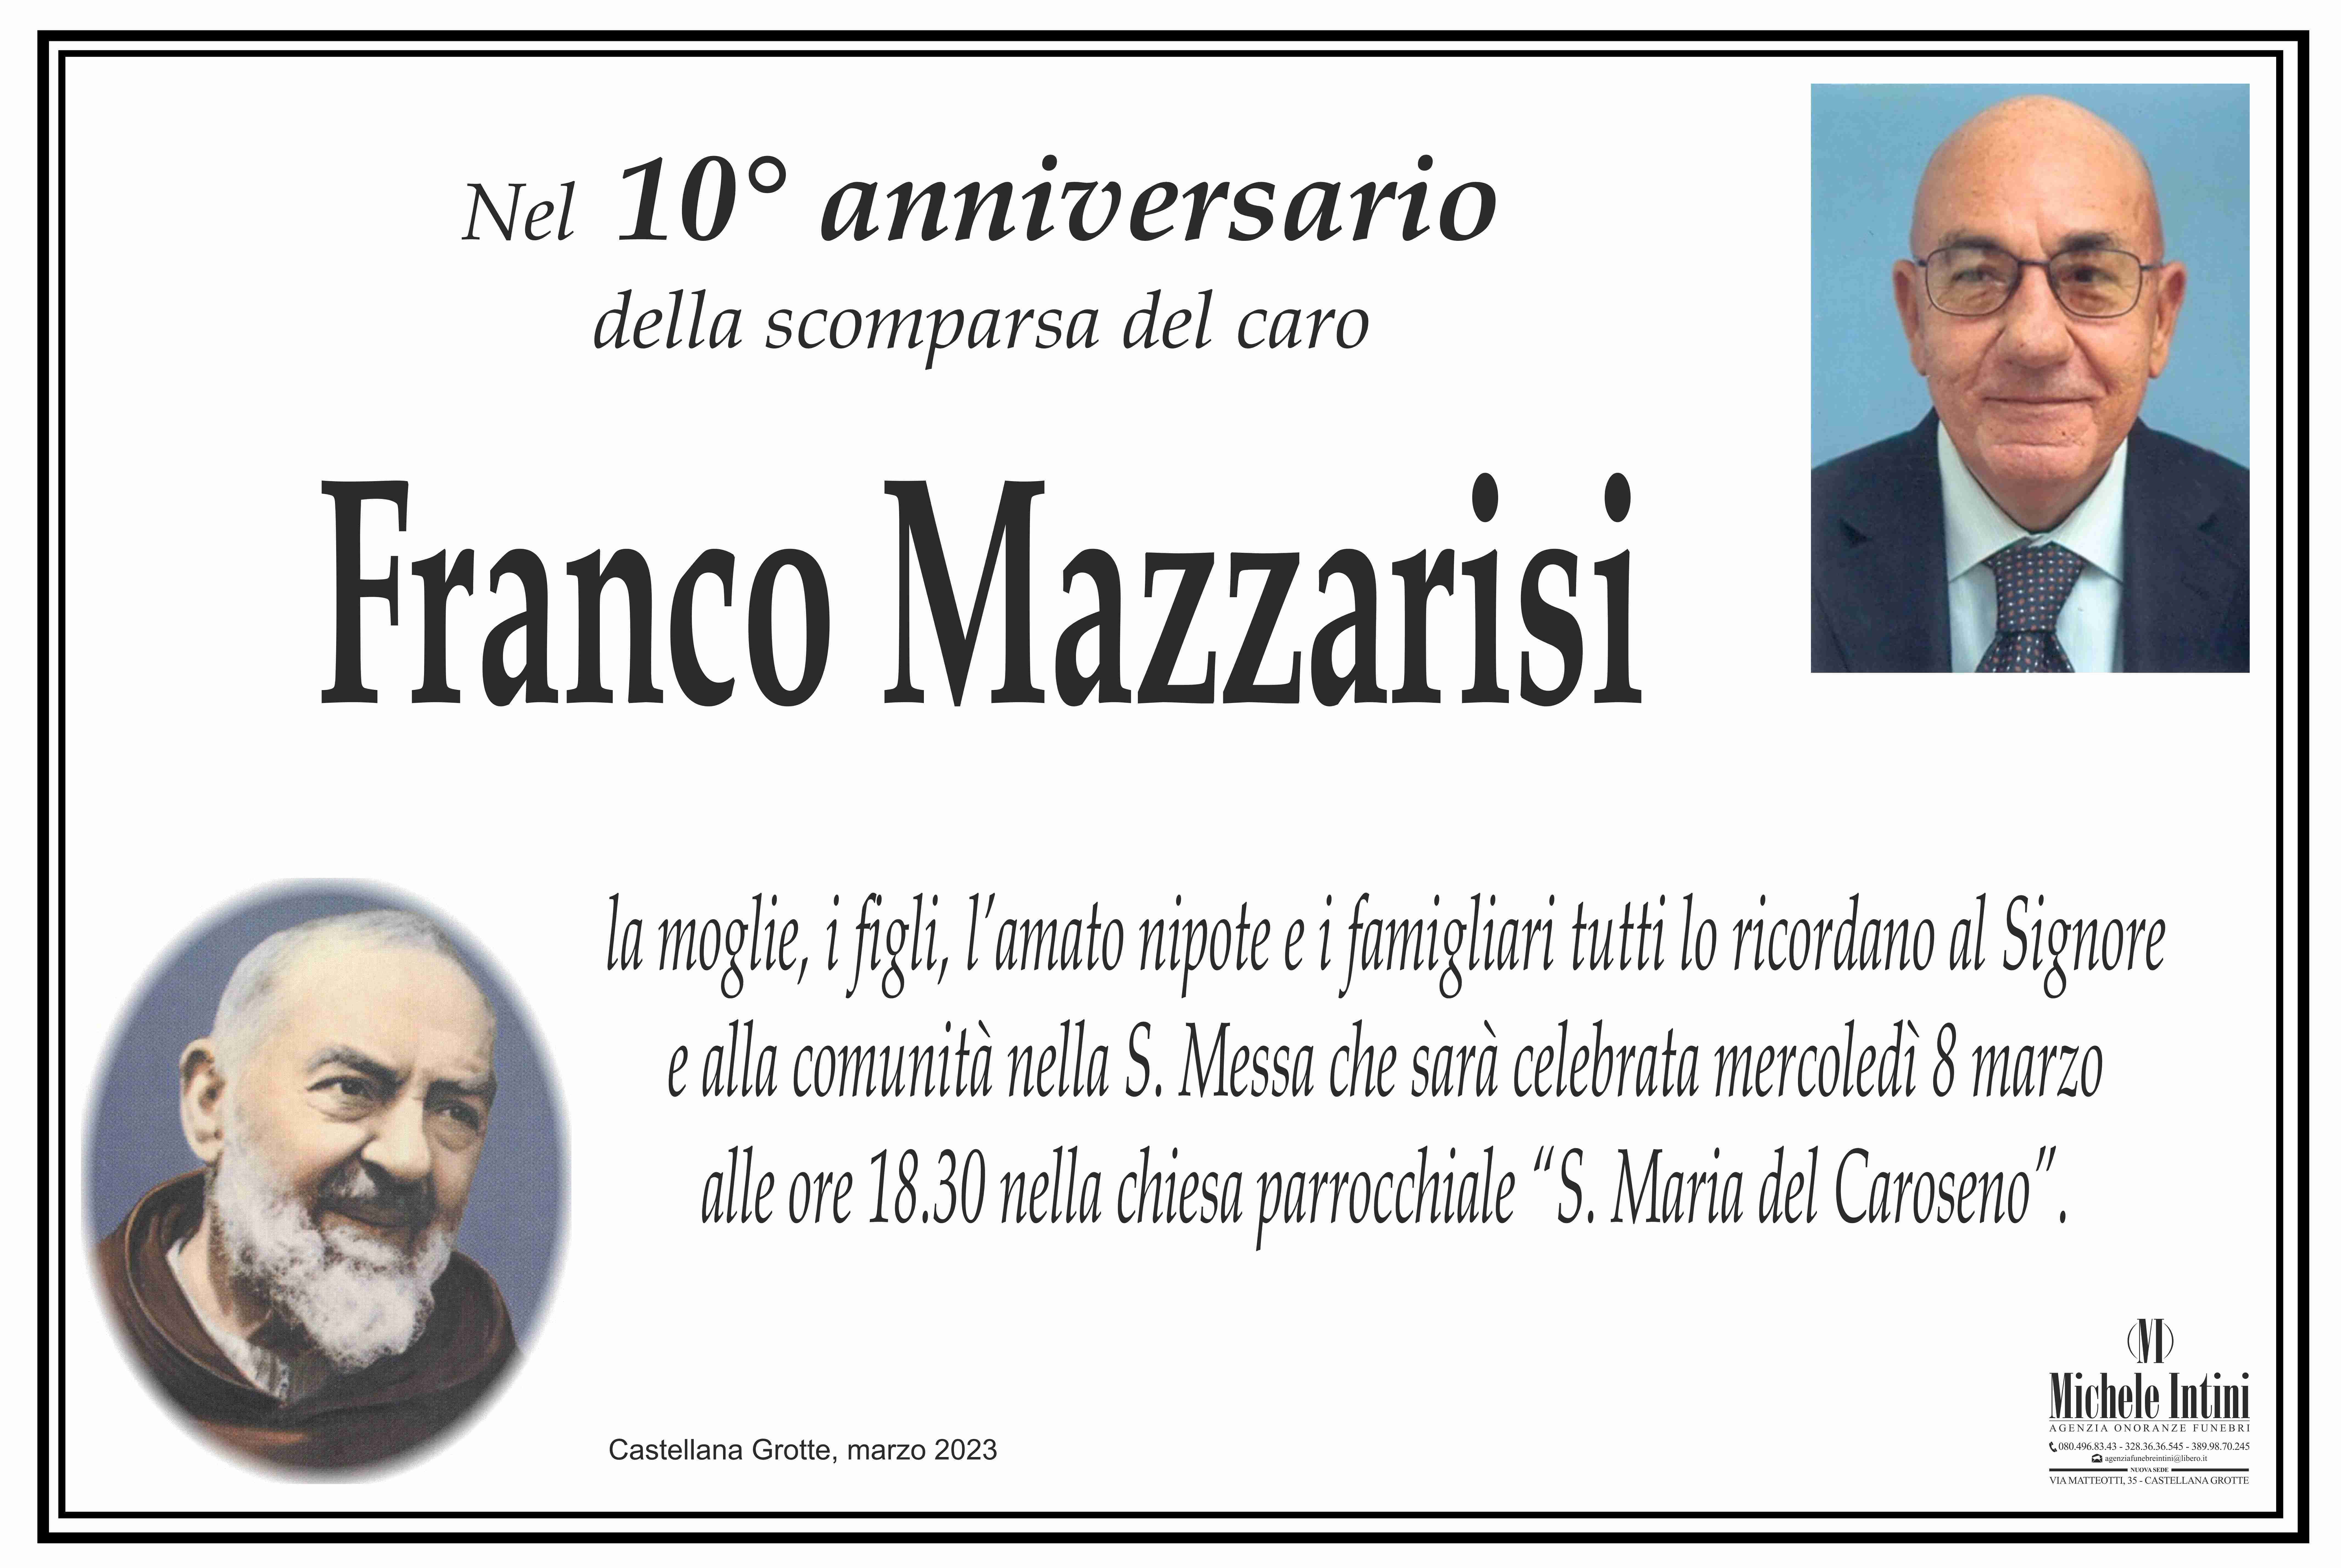 Franco Mazzarisi